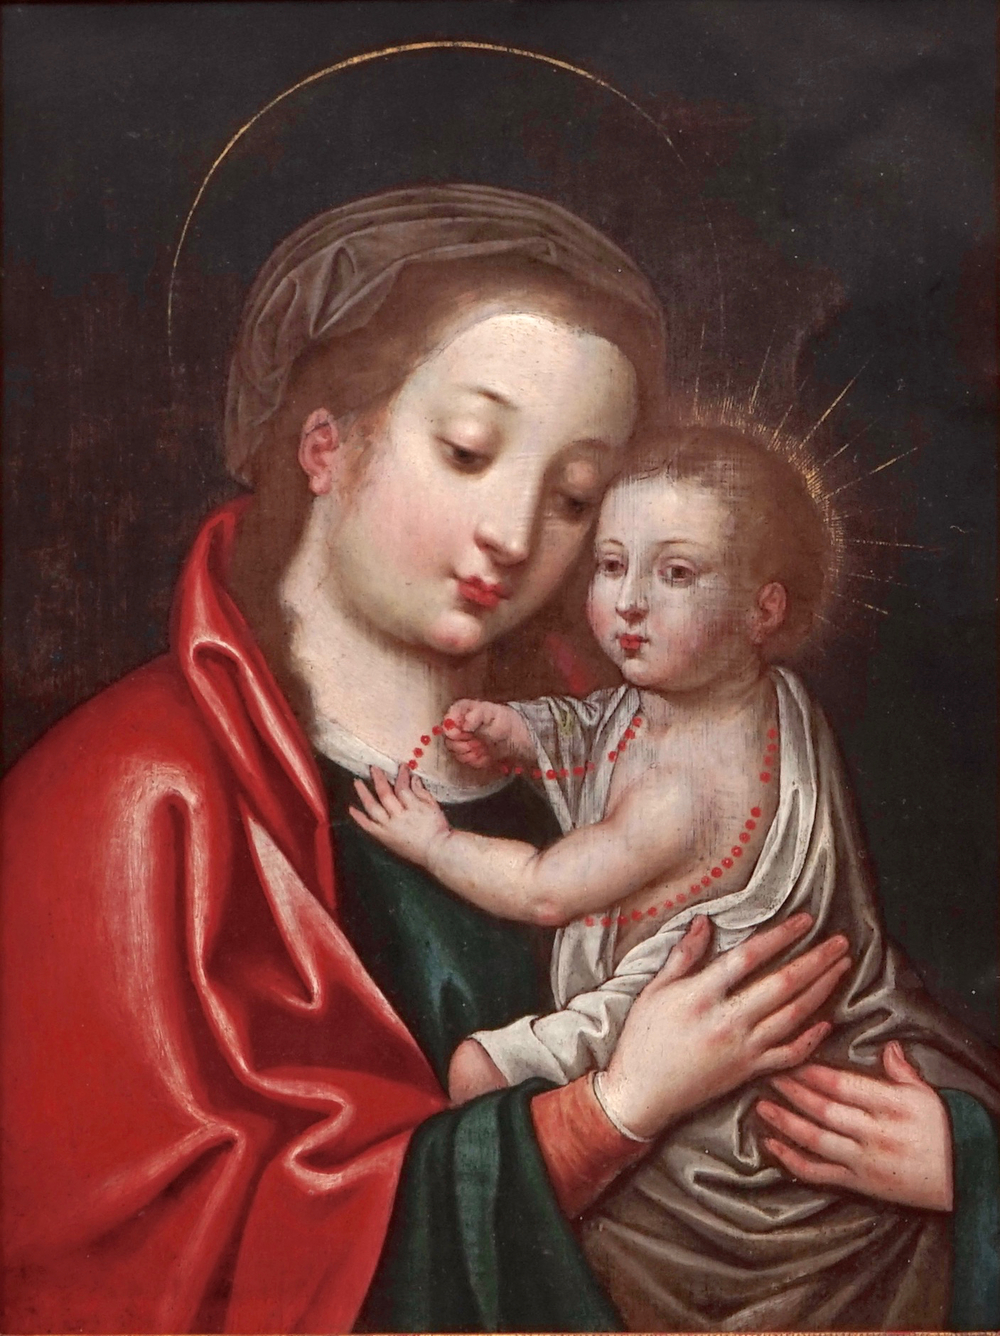 Vlaamse school, Madonna met kind, olie op koper, 16e eeuw